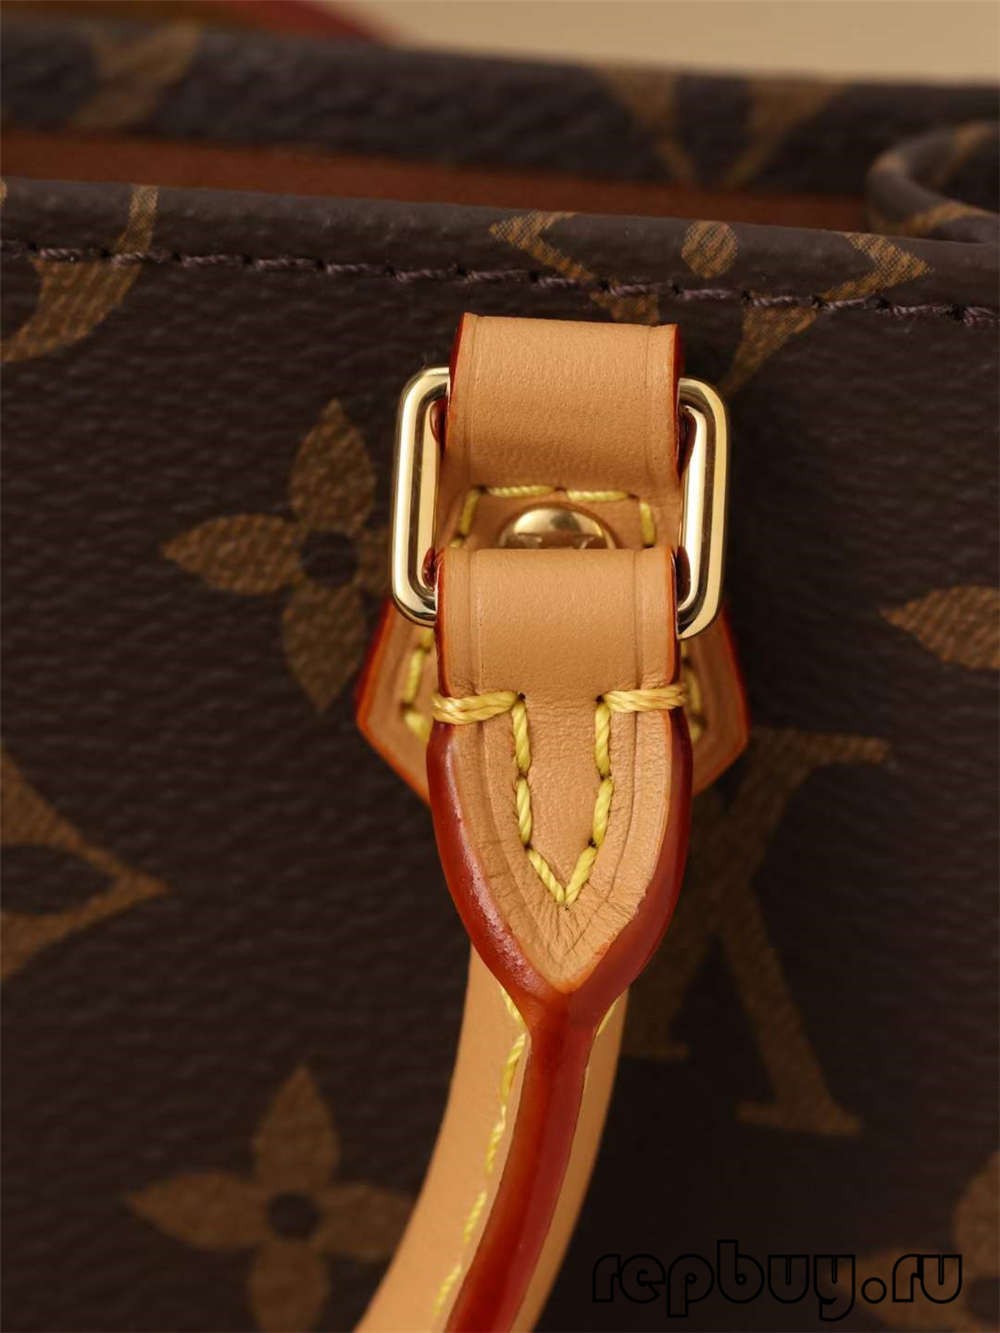 Louis Vuitton M69442 Petit Sac Plat vysoce kvalitní repliky sáčků (aktualizováno 2022) - Nejlepší kvalita falešných Louis Vuitton Bag Online obchod, replika značkové tašky ru